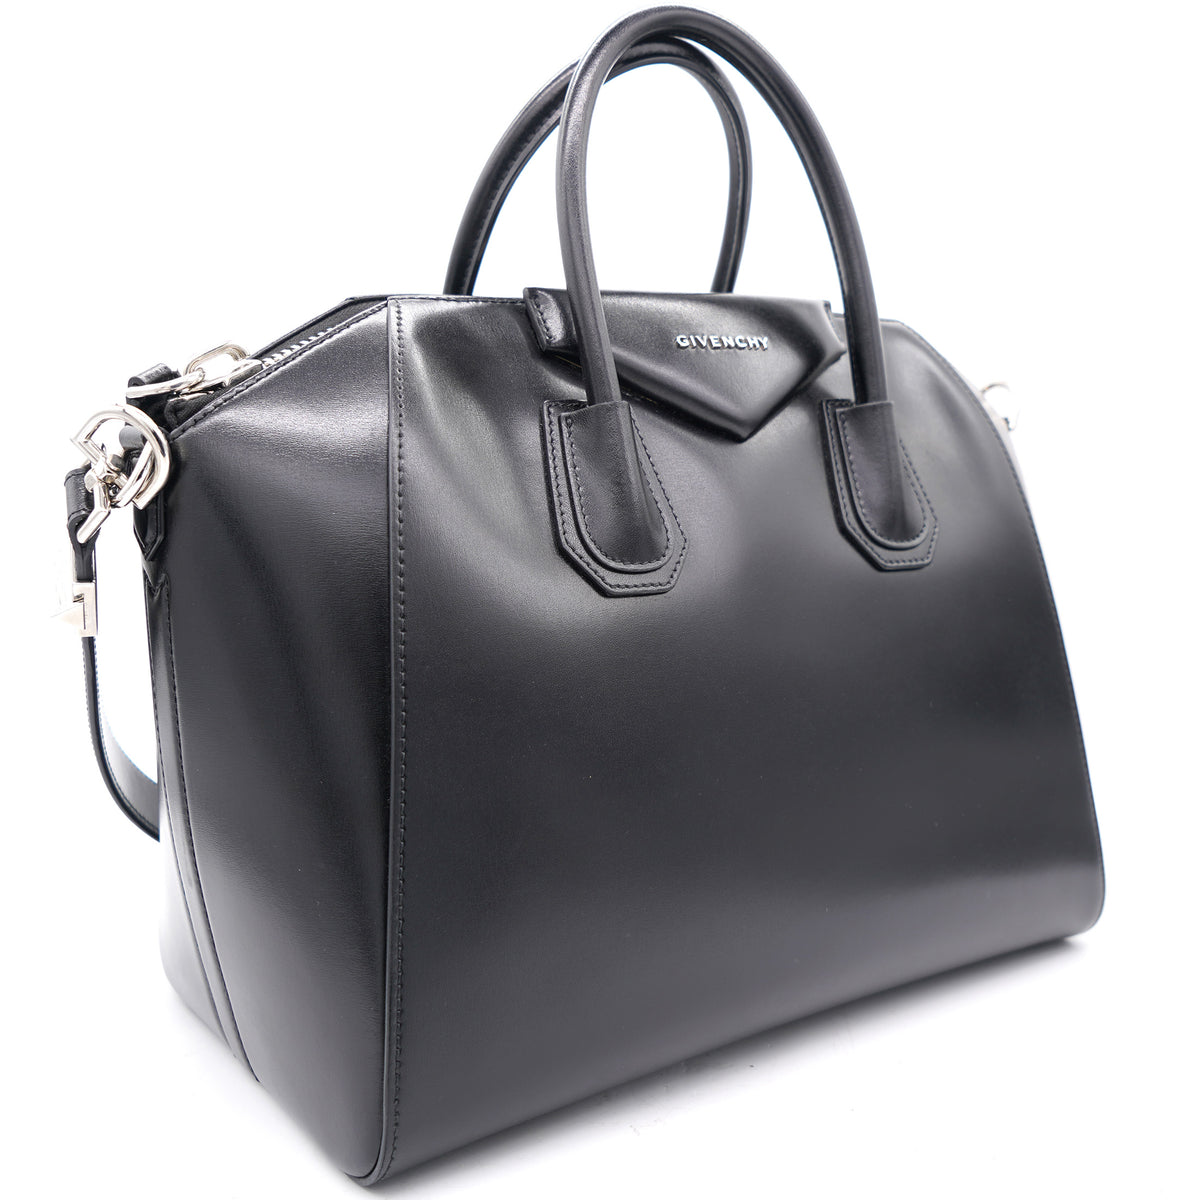 Givenchy Antigona Large Smooth Leather Bag, Gray